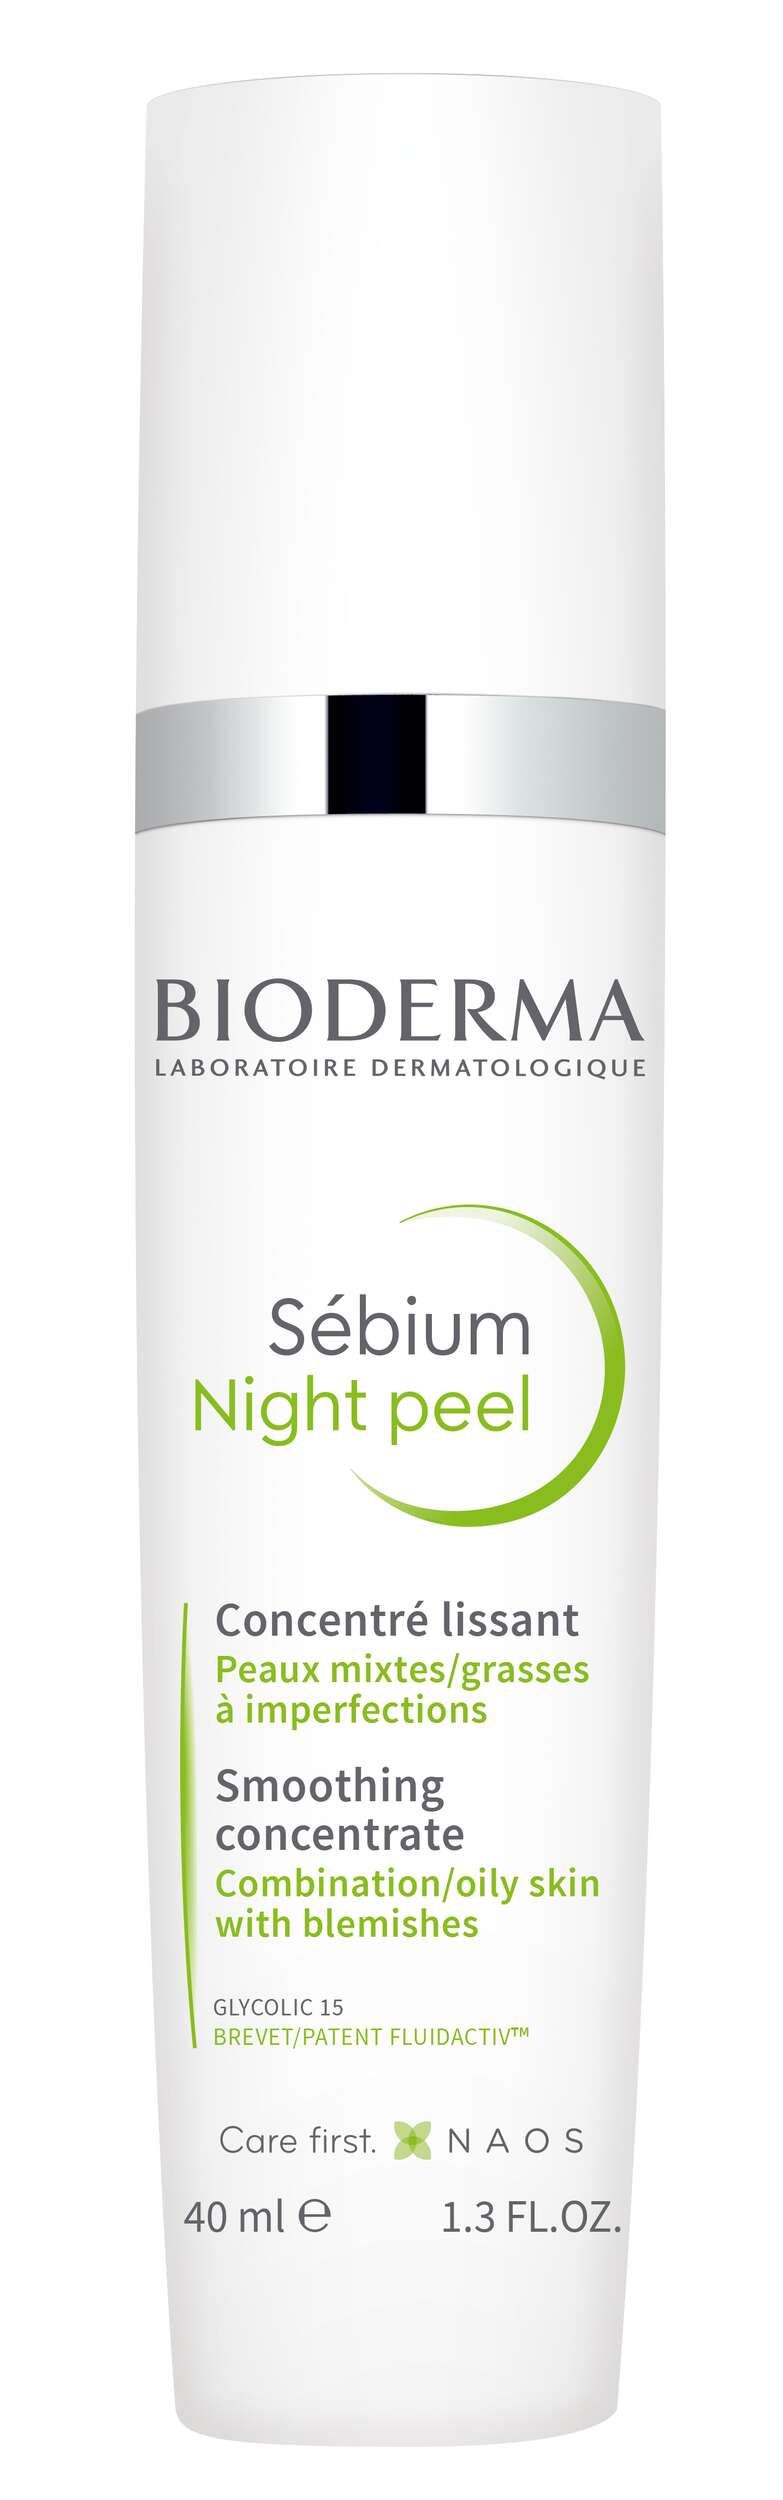 Bioderma Sebium Night Peel Concentrato Peeling Levigante Notte 40ml